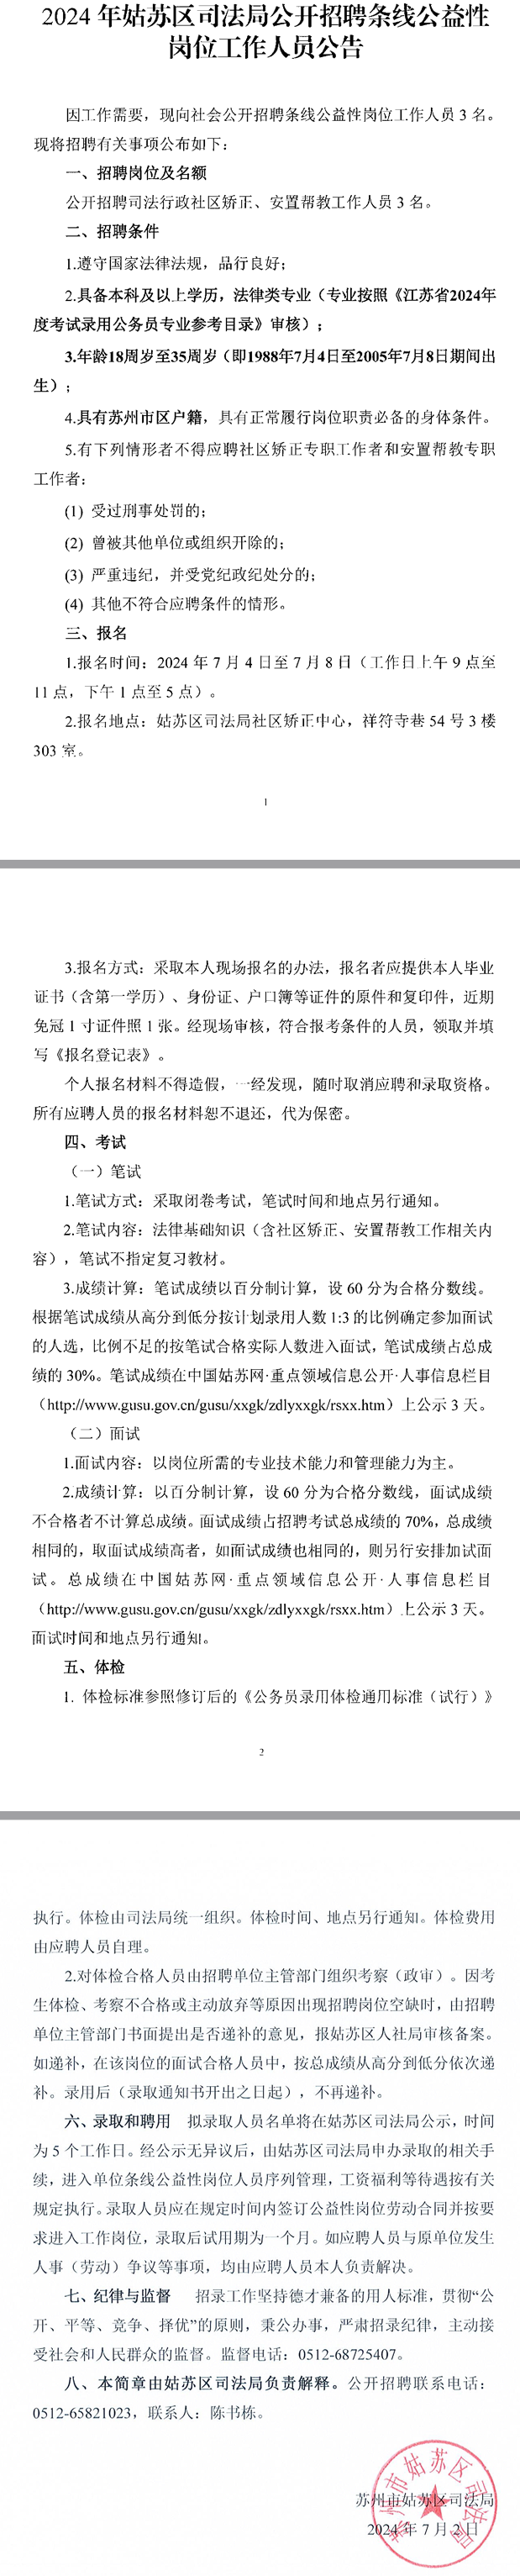 2024年江苏苏州姑苏区司法局招聘条线公益性岗位工作人员3人公告